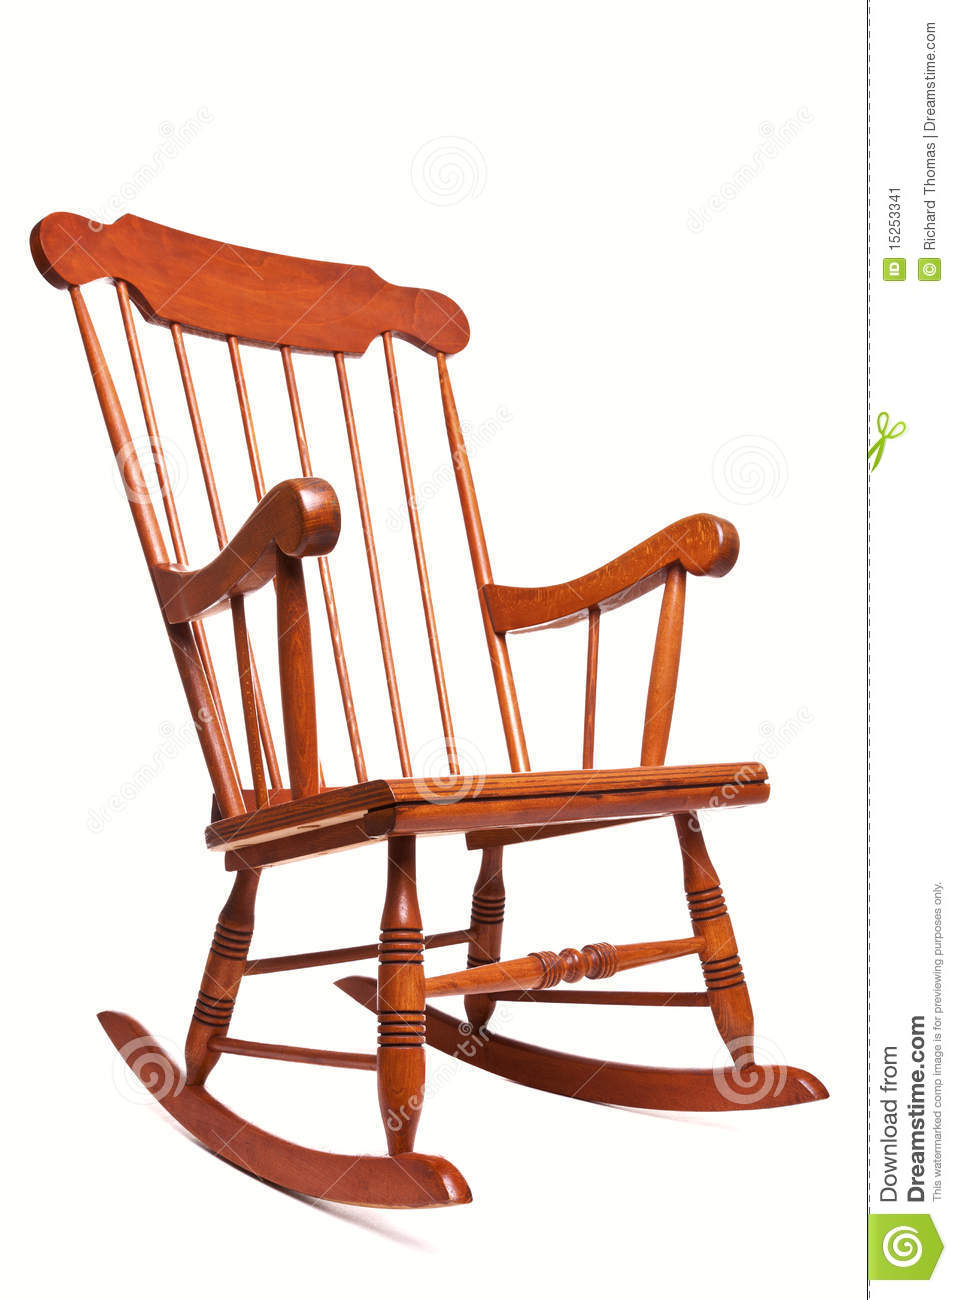 Chair clipart top view clipar